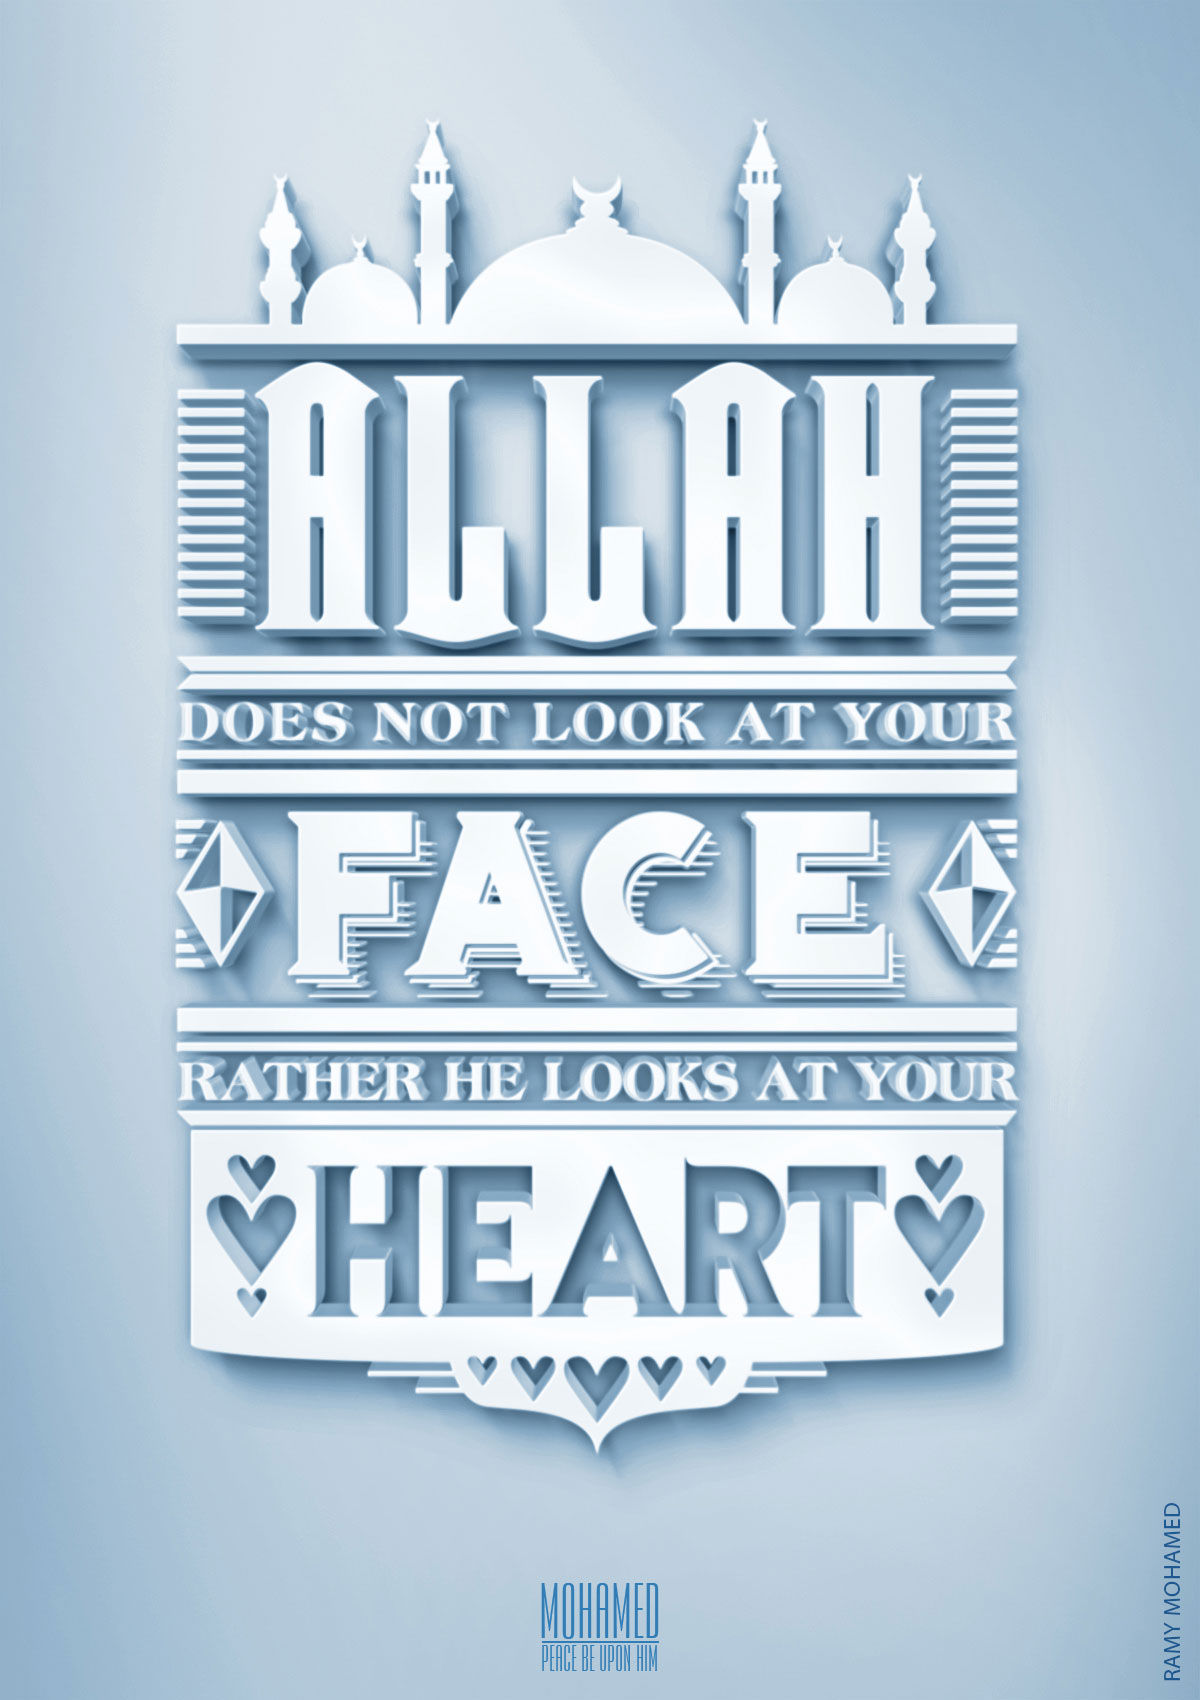 allah muhammed islam Quran jesus Bibel moses Behance God allah rasul mohamed arts photos logos